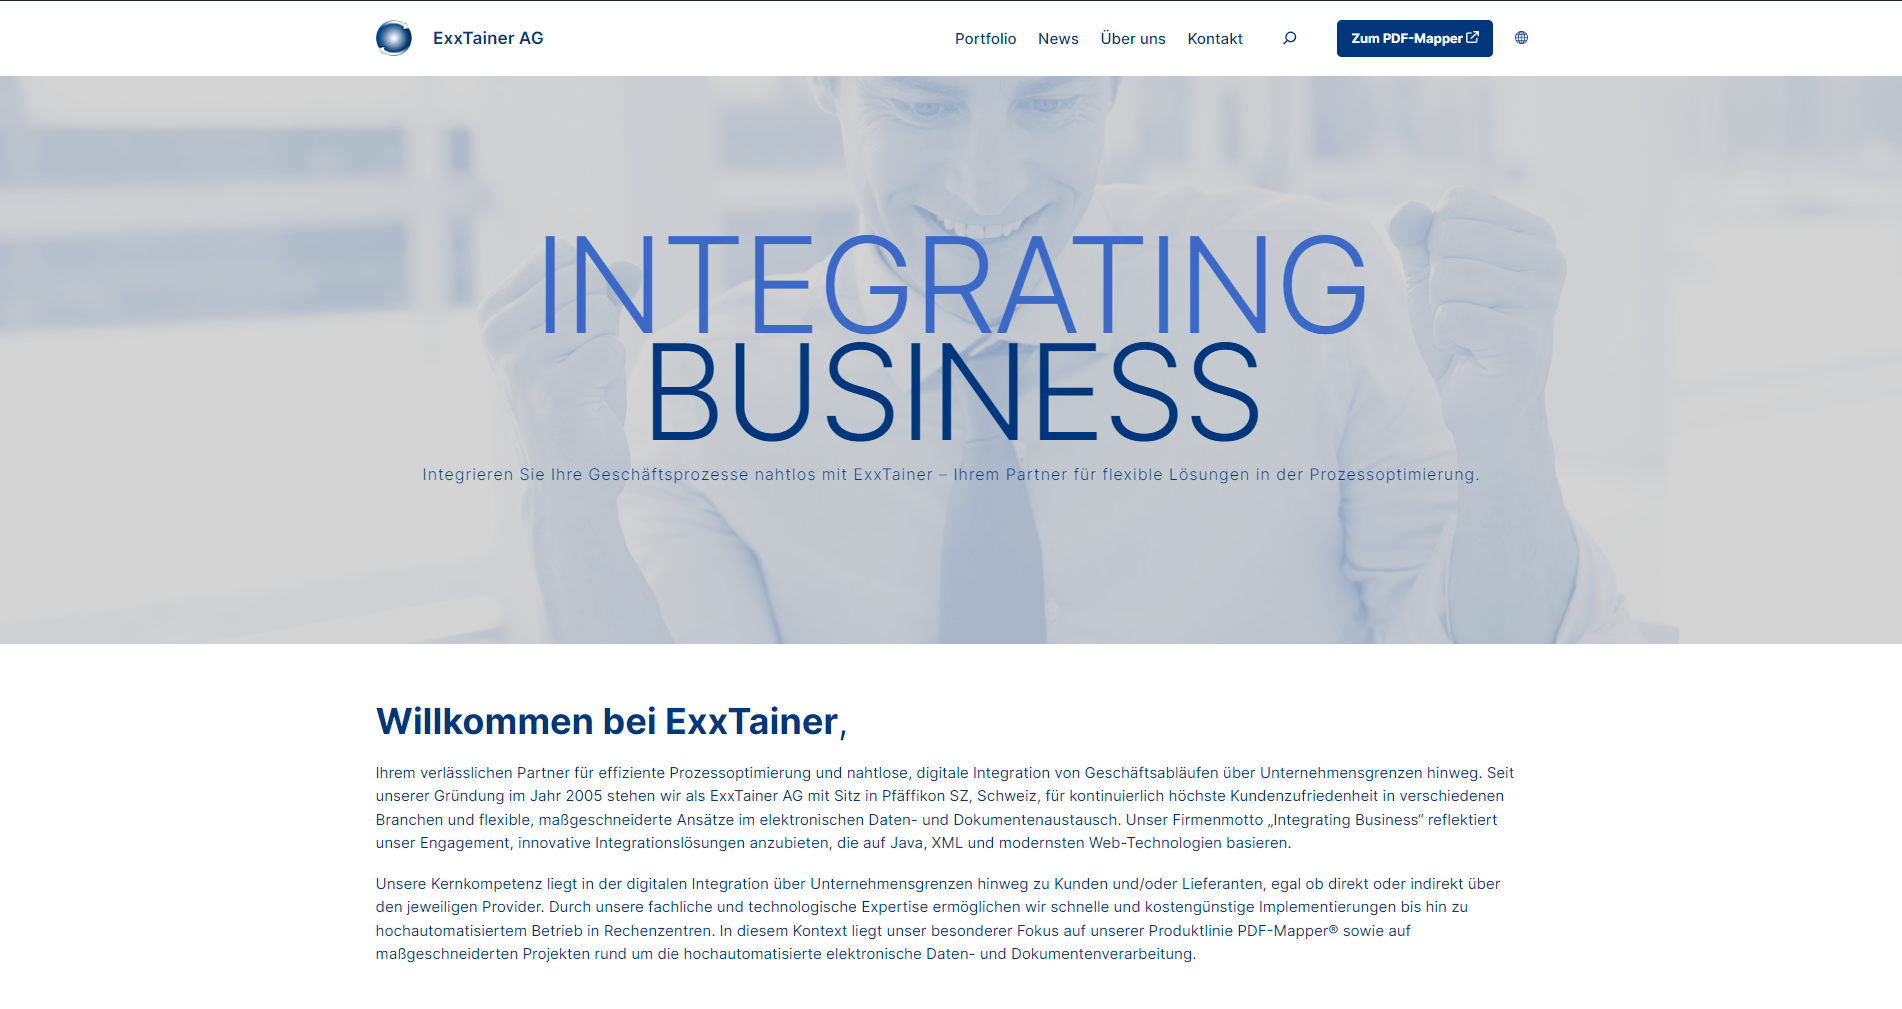 ExxTainer AG Webseite in neuem Gewand